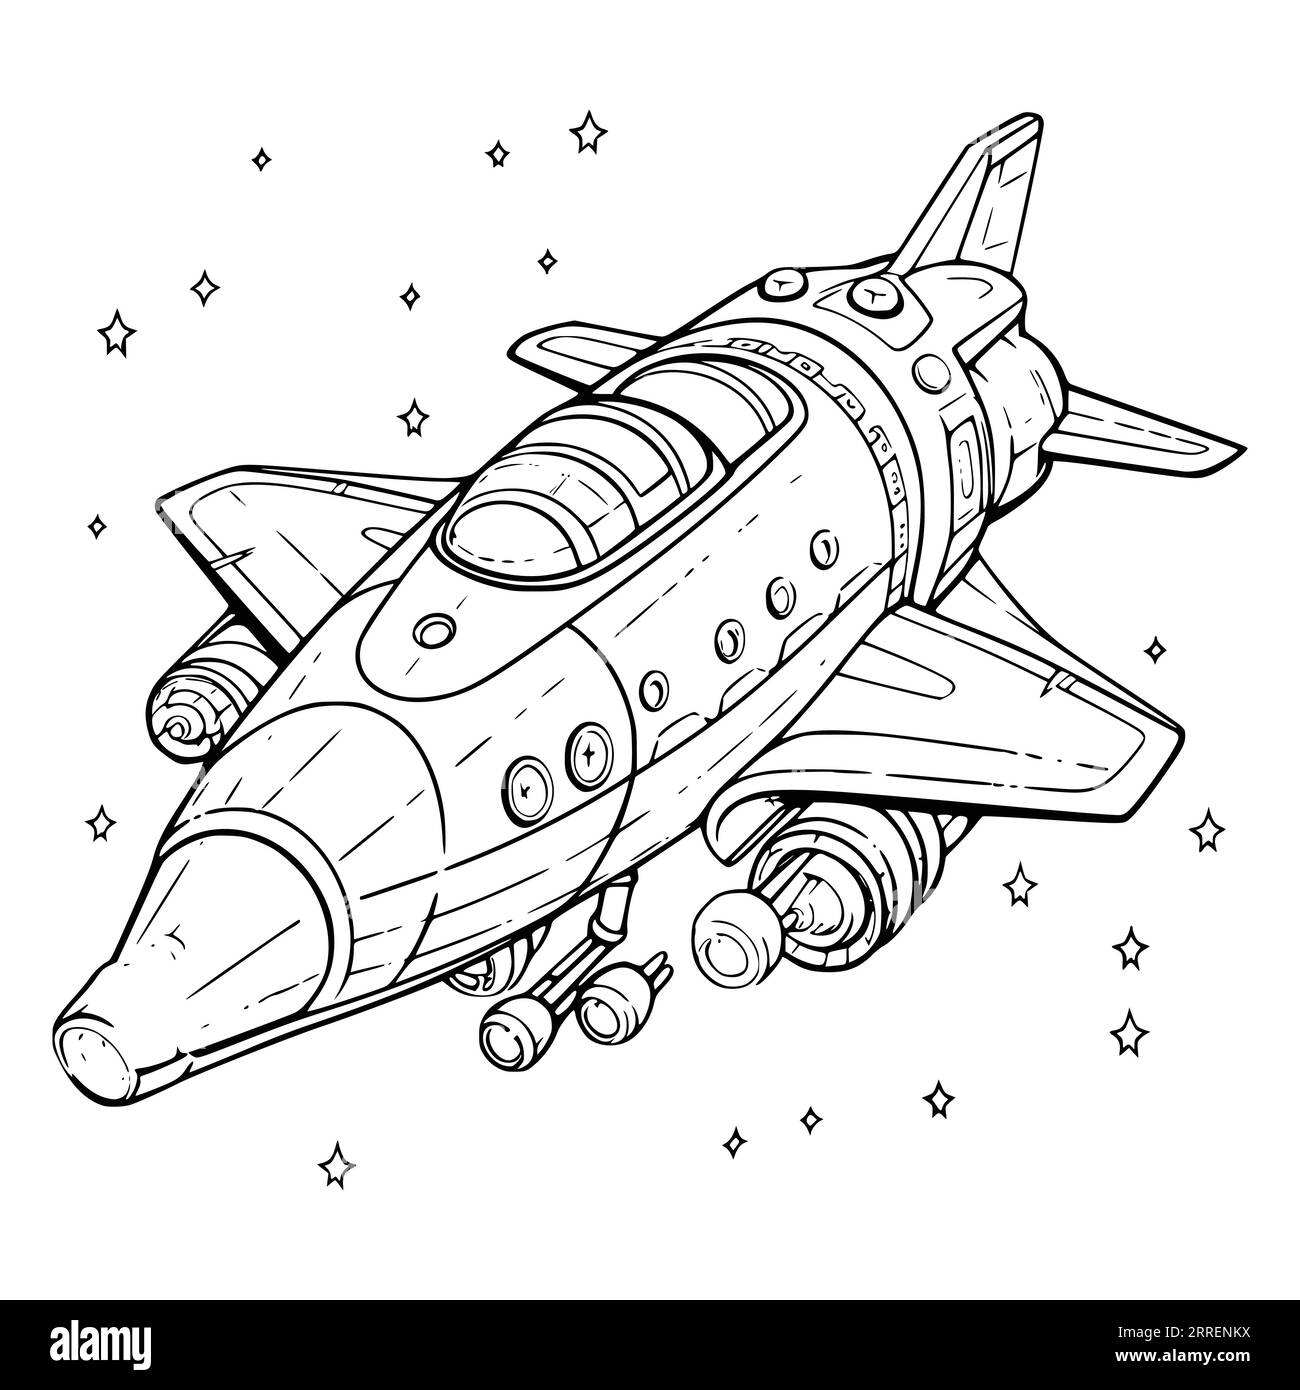 Spaceship coloring pages printable hi